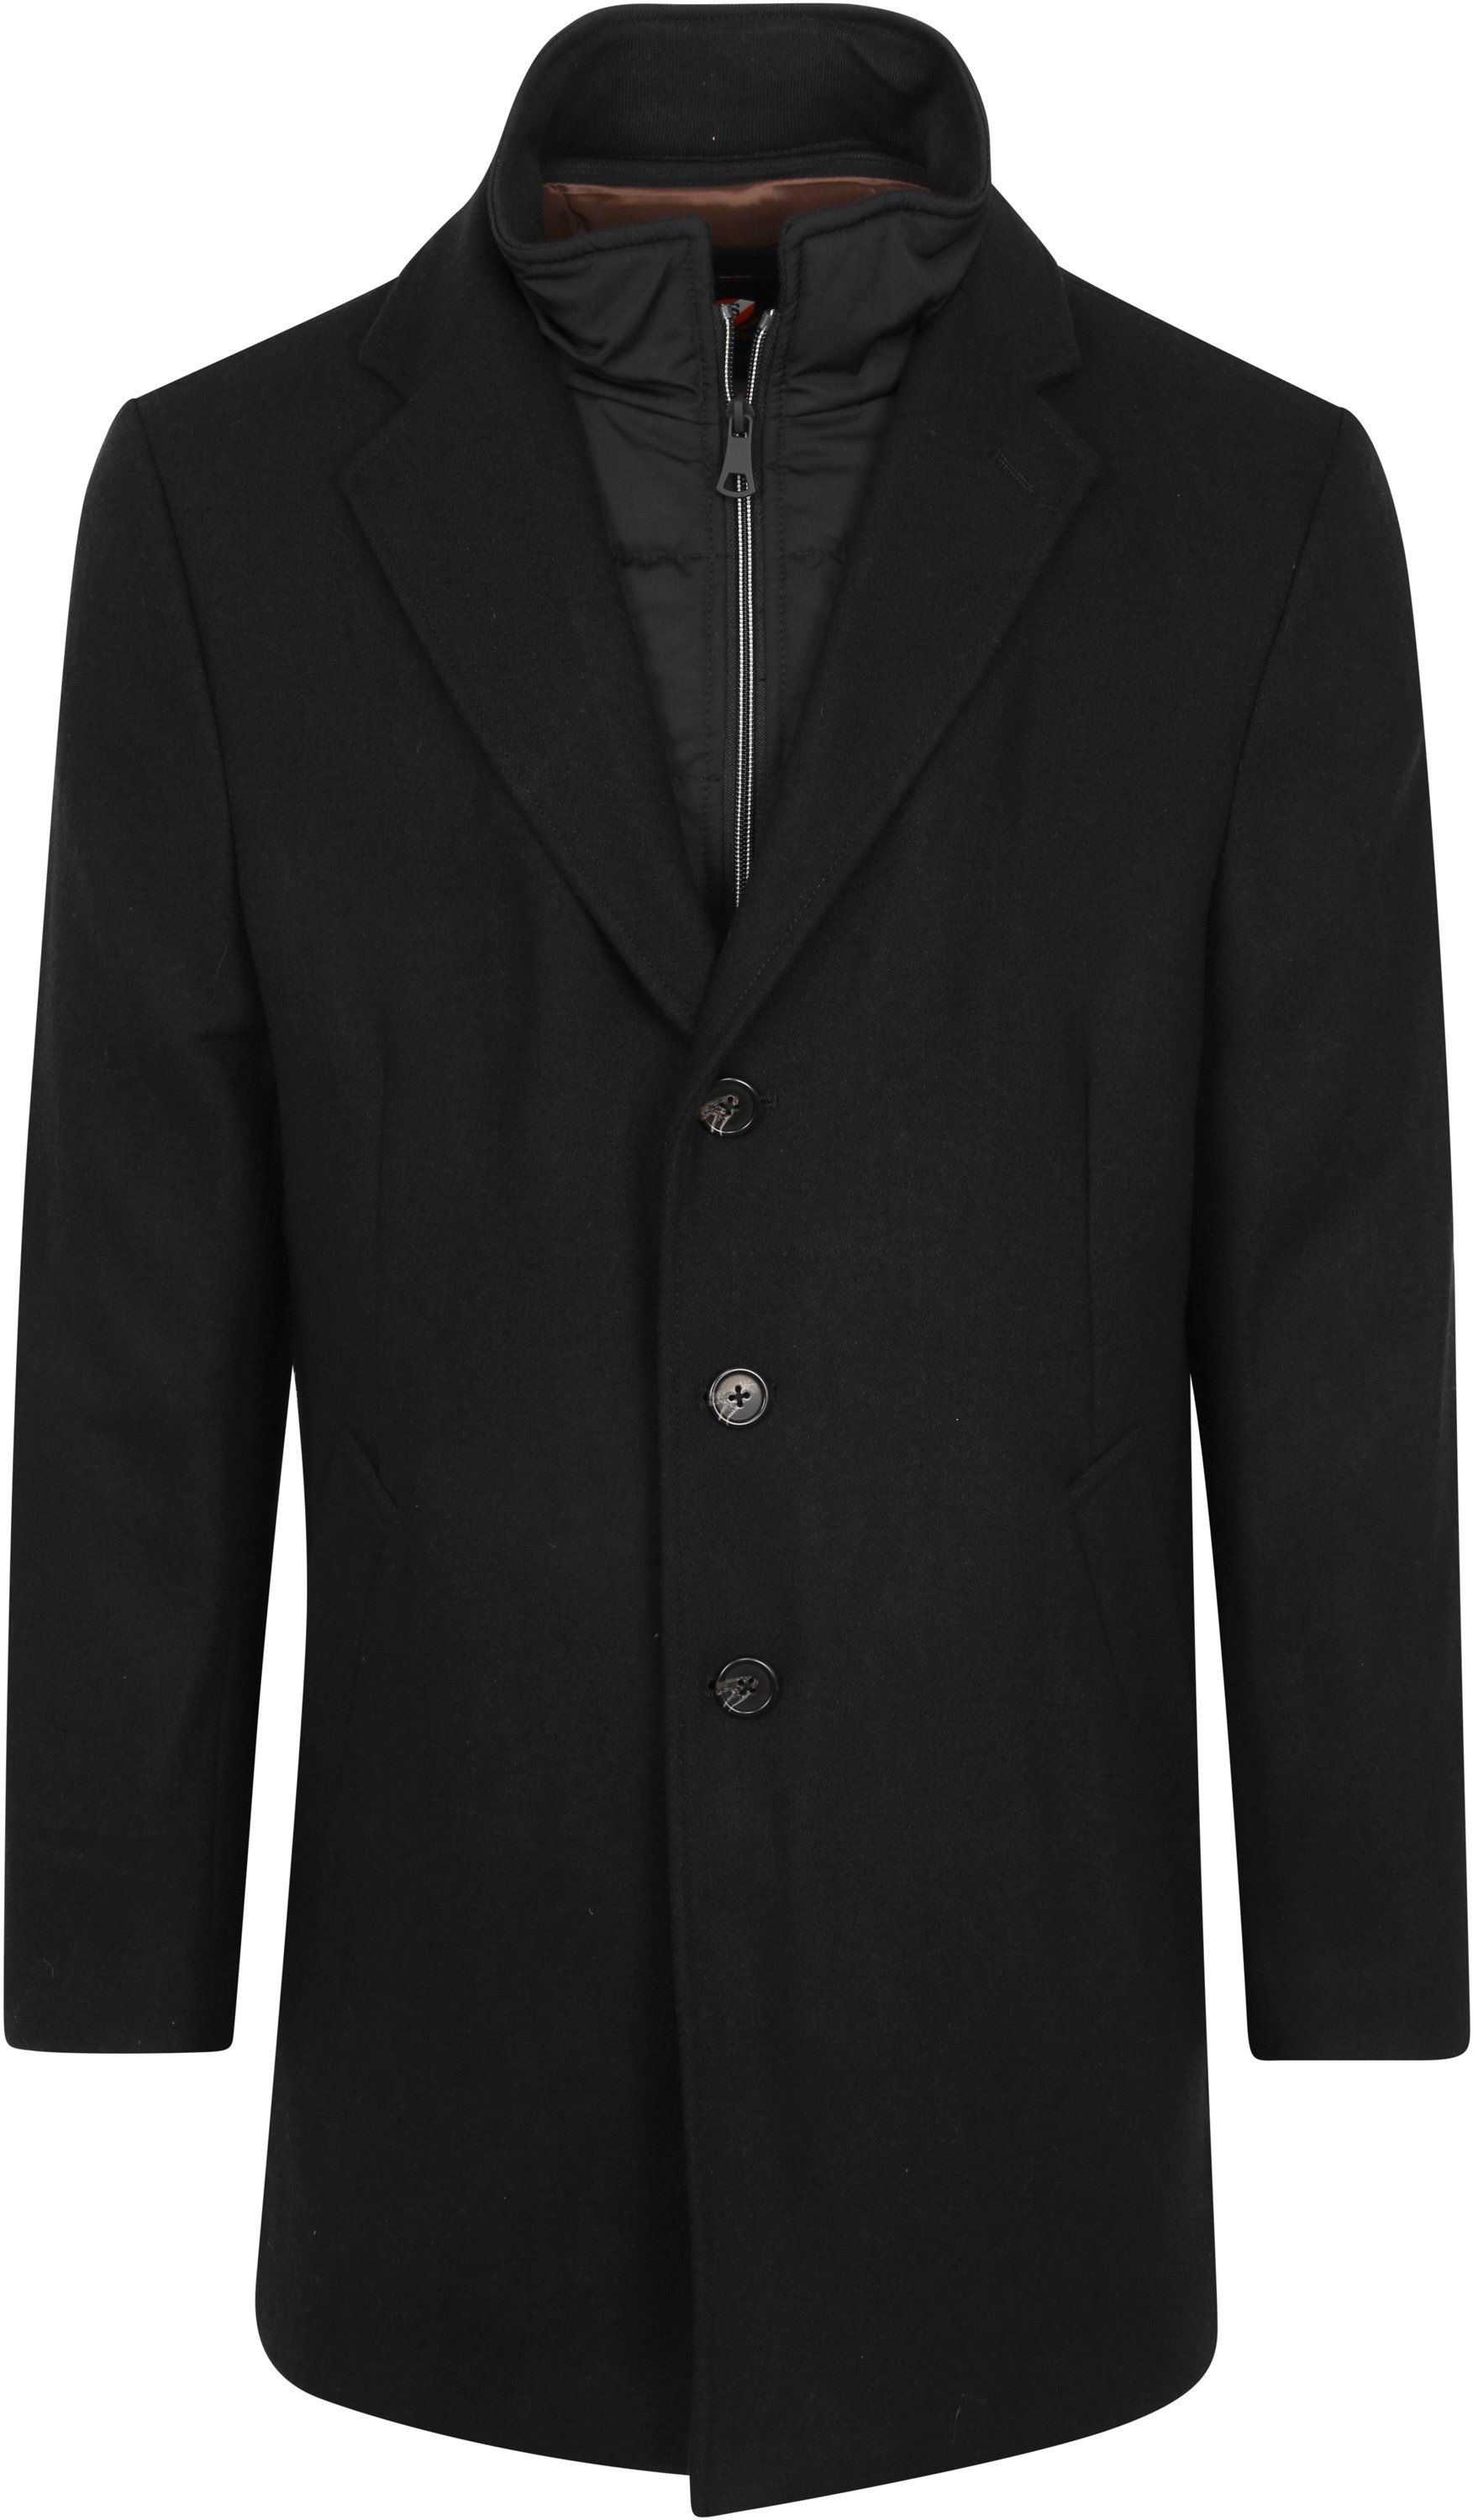 Suitable Job Coat Black size 36-R